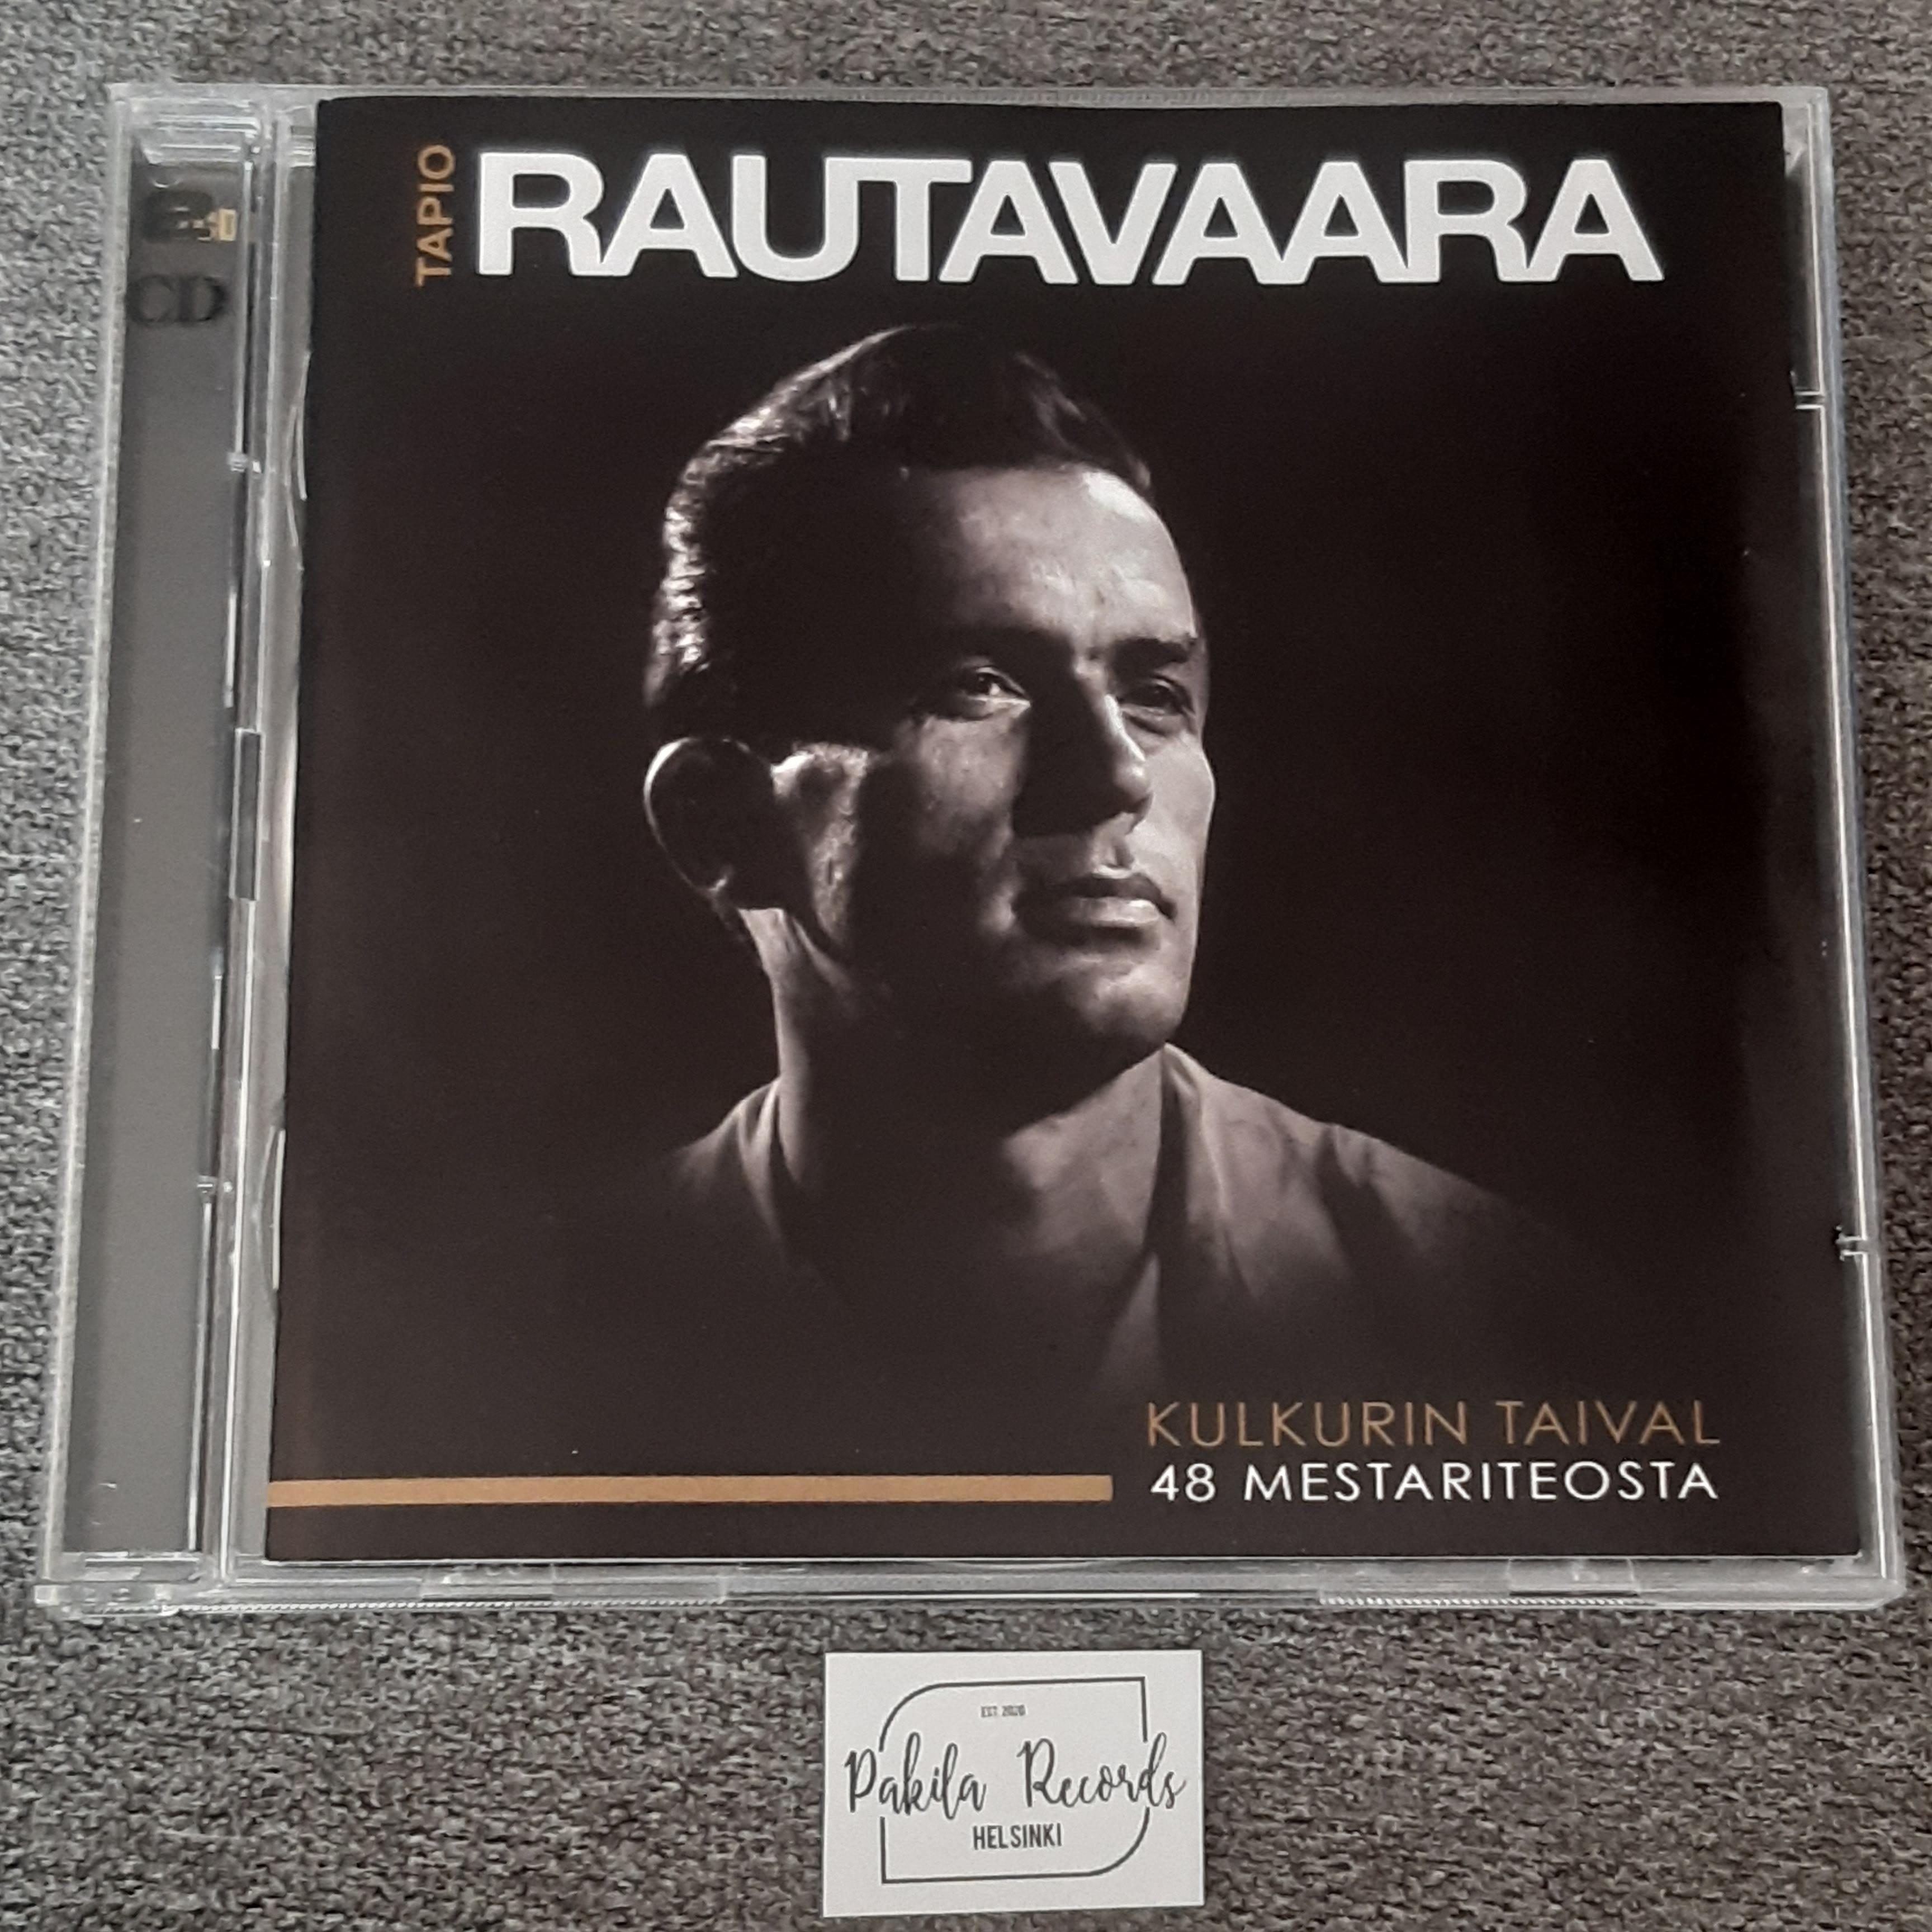 Tapio Rautavaara - Kulkurin taival, 48 Mestariteosta - CD (käytetty)